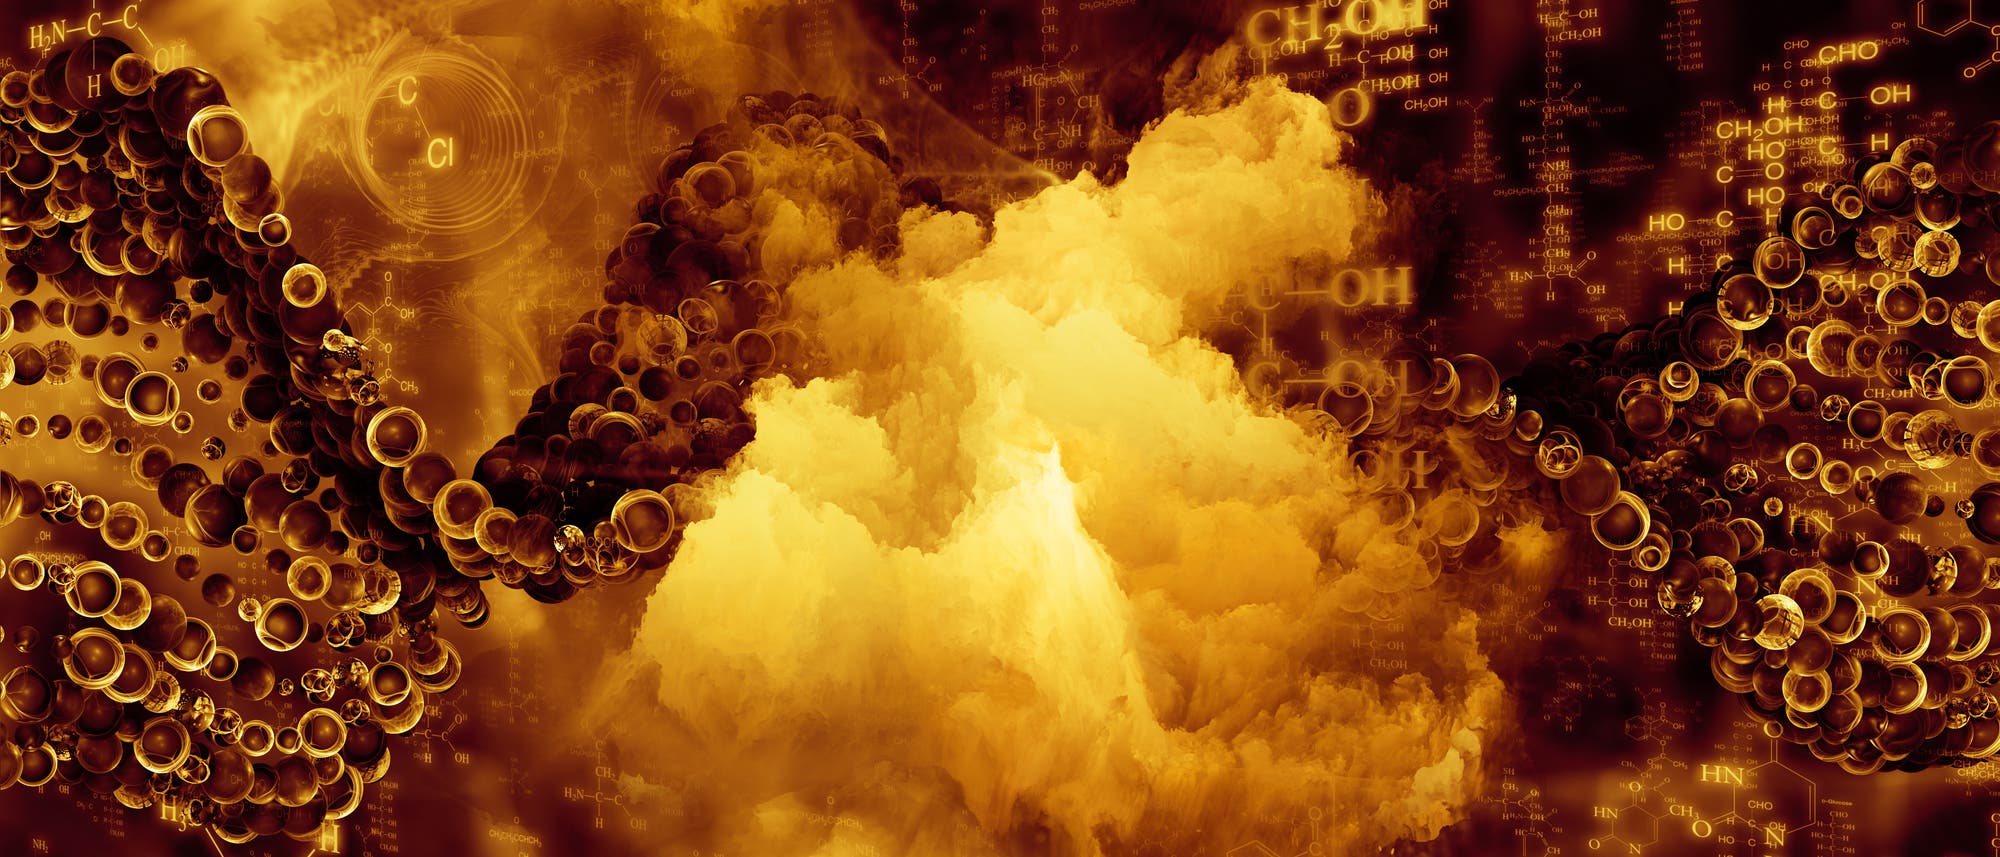 Bläschen und Moleküle vor einem vage nach Geysir aussehenden Hintergrundbild, alles in den Braun- und Gelbtönen, die dem Chemiker anzeigen, dass der größte Teil seiner teuren Chemikalien gerade zu unbrauchbarem Schlonz verkocht ist.